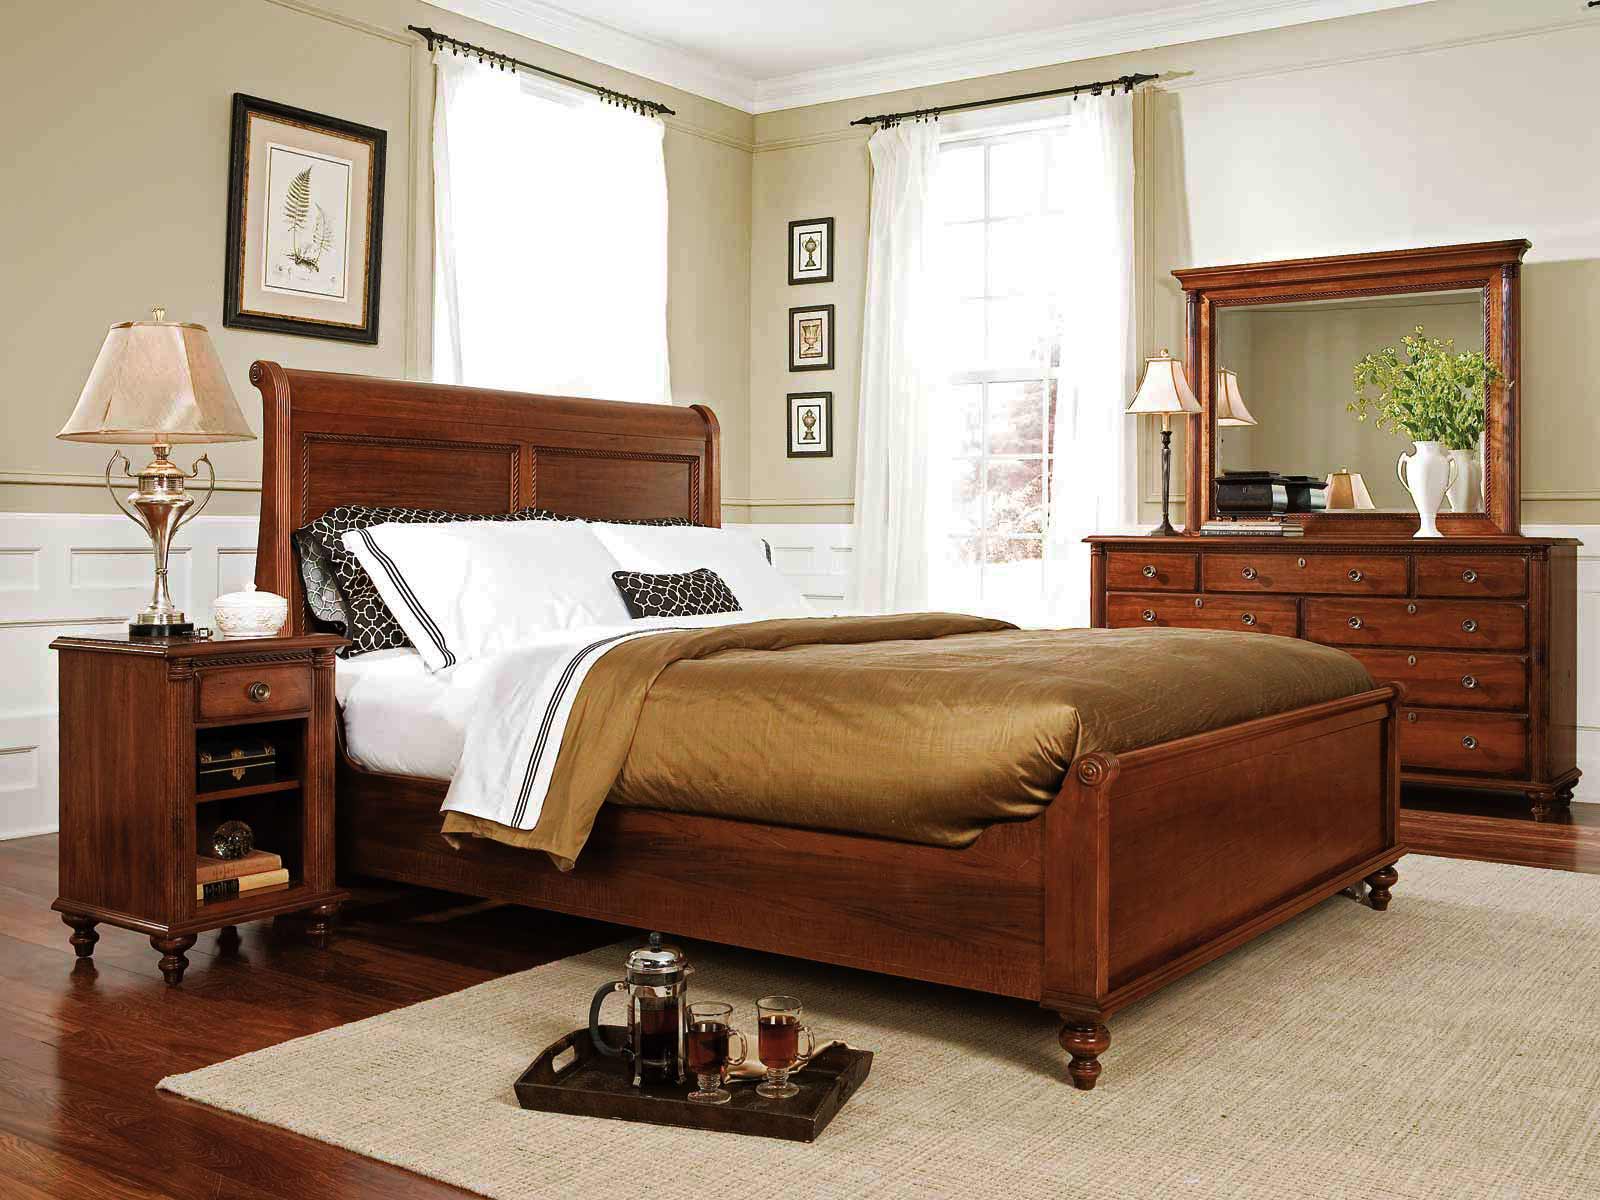 durham bedroom furniture for sale